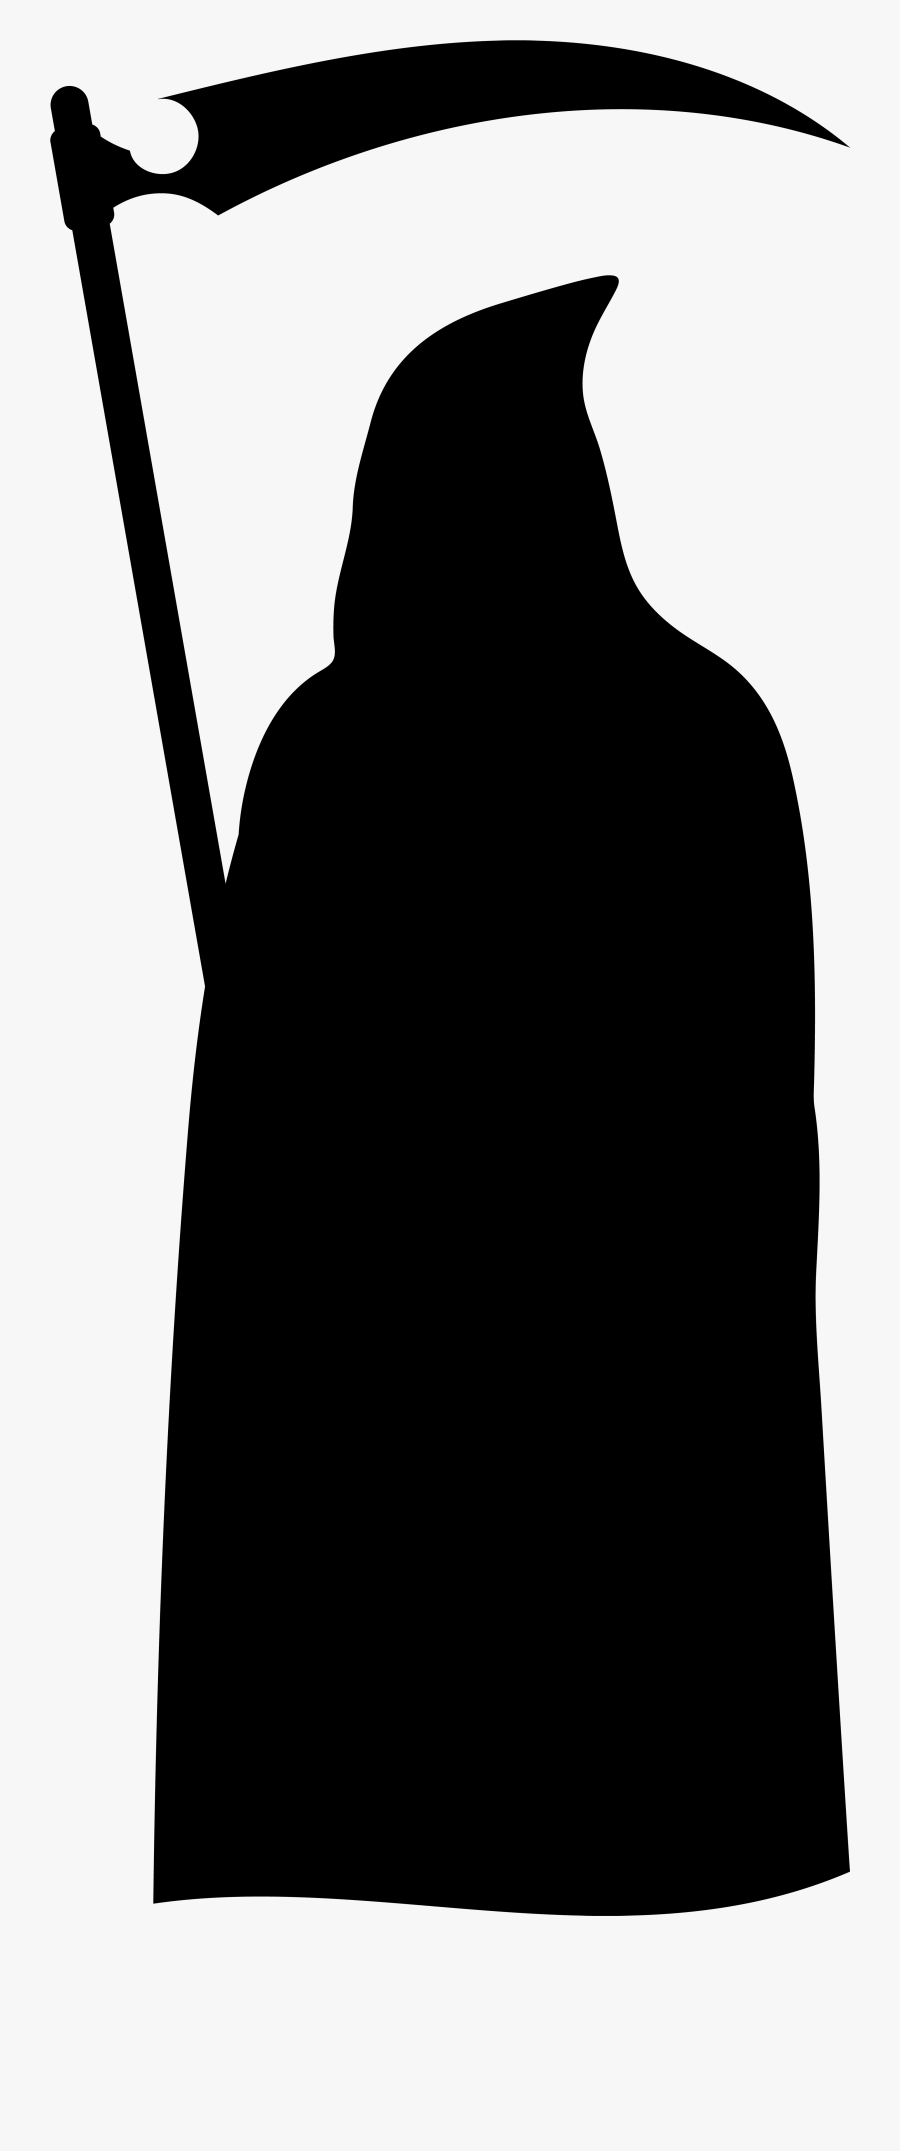 Grim Reaper Silhouette Png Clip Art Imageu200b Gallery - Grim Reaper Silhouette Png, Transparent Clipart